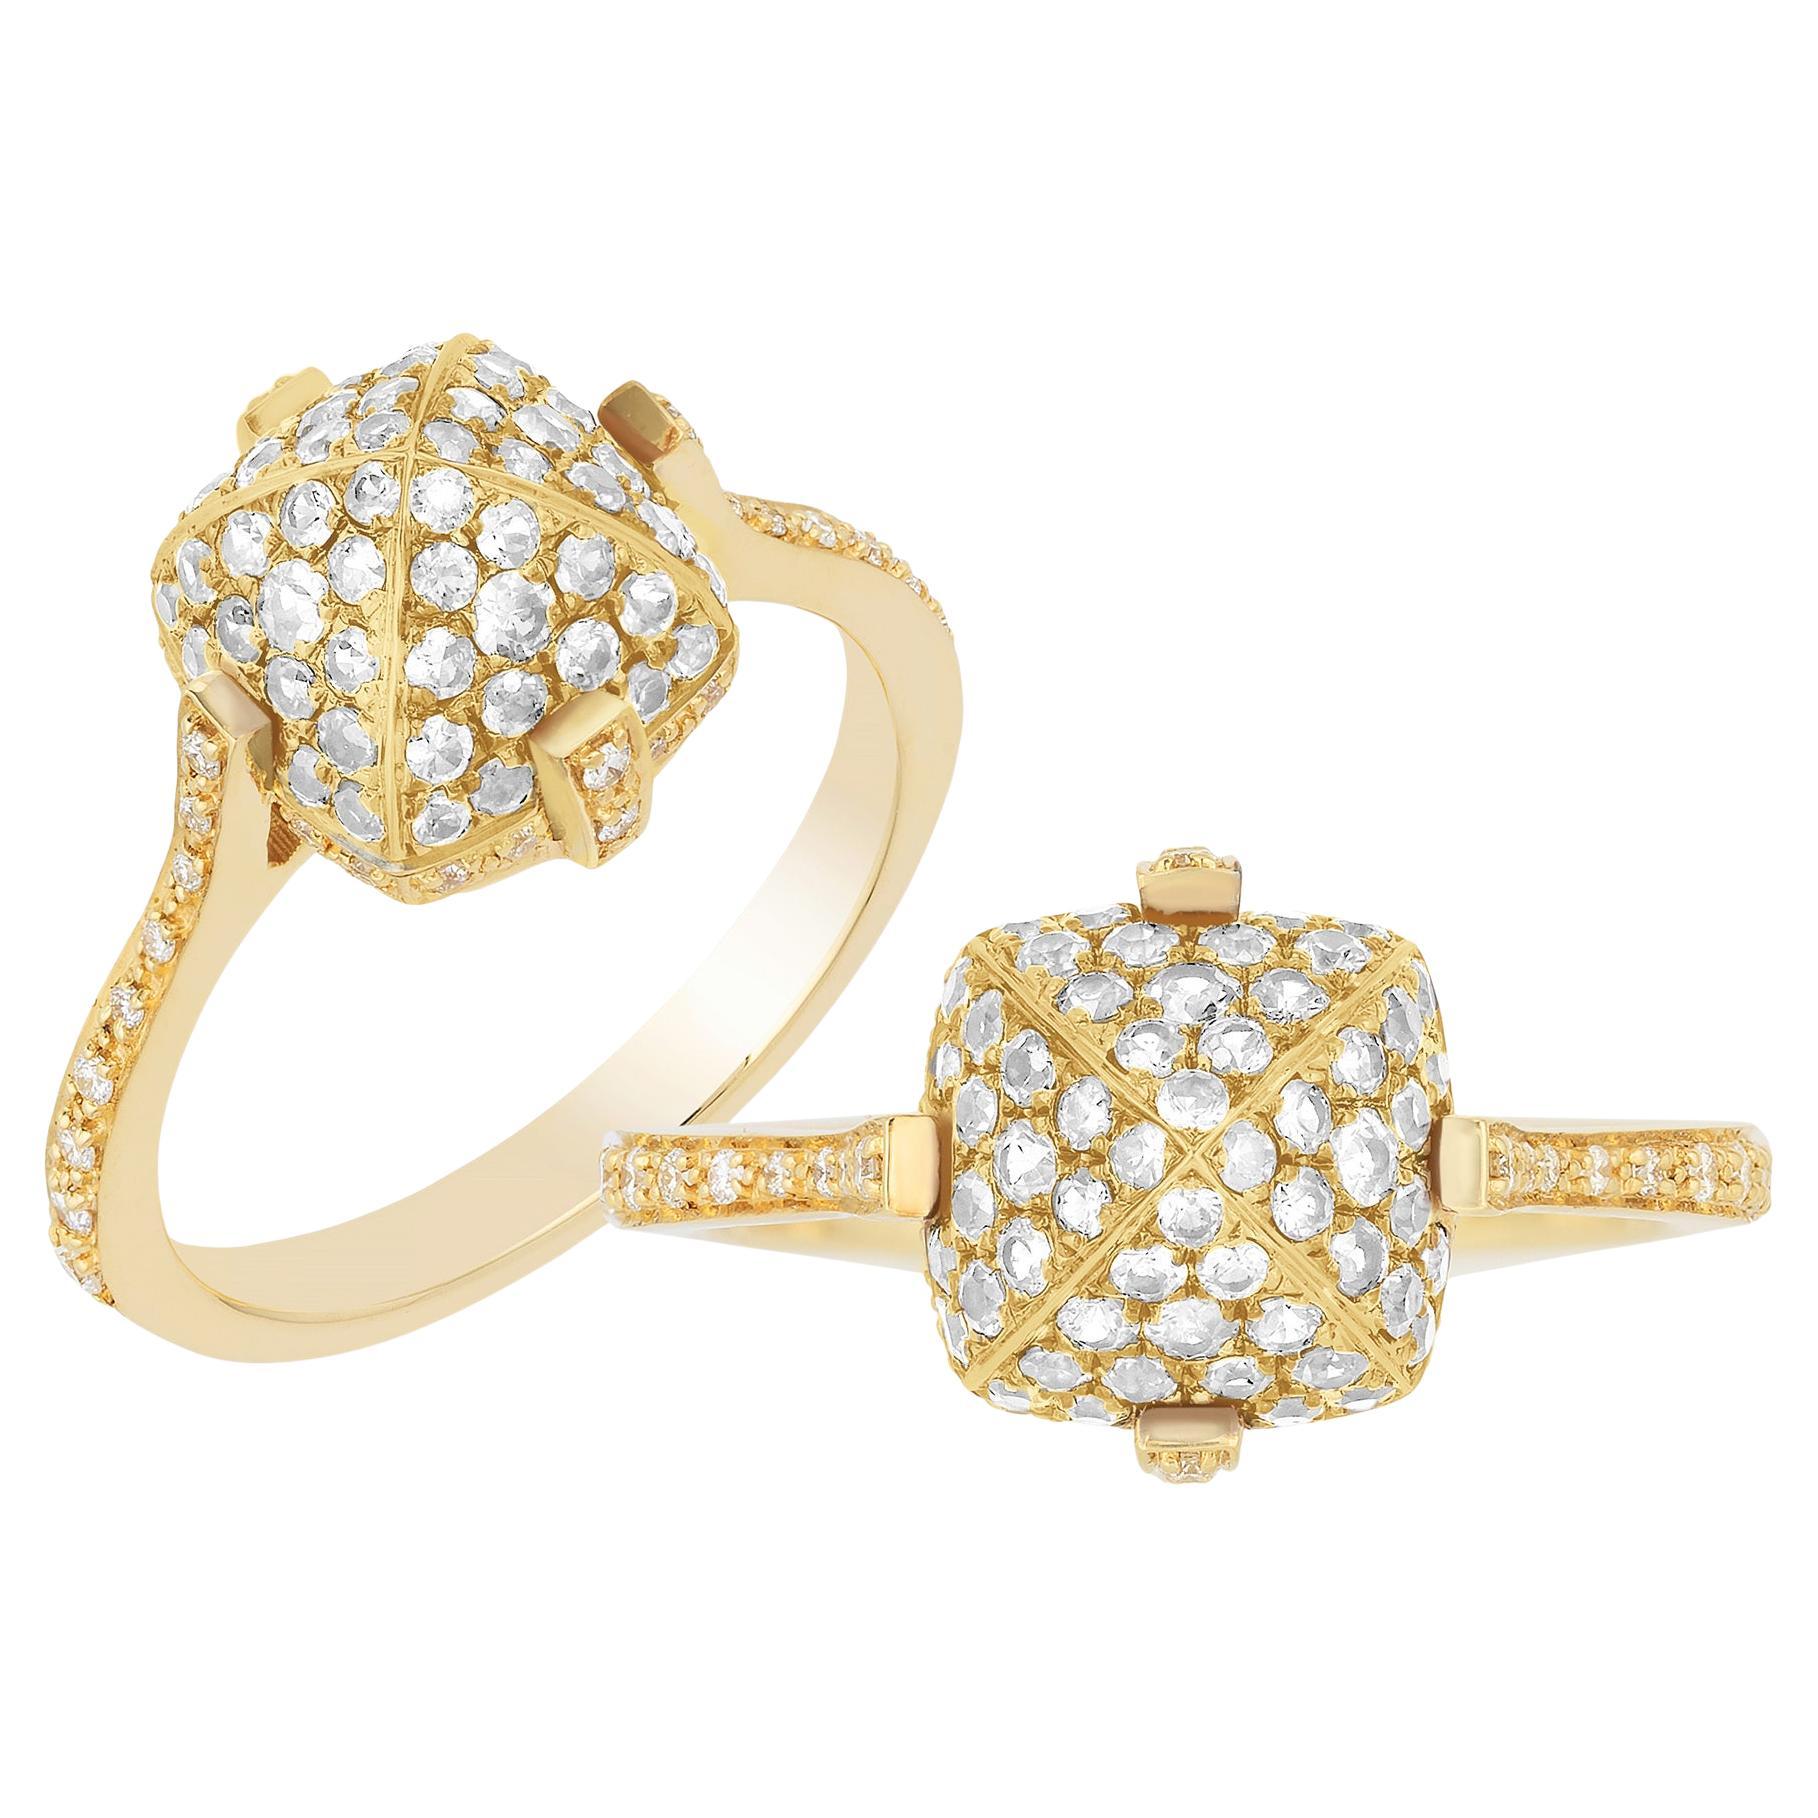 Goshwara Diamond & Gold Ring For Sale